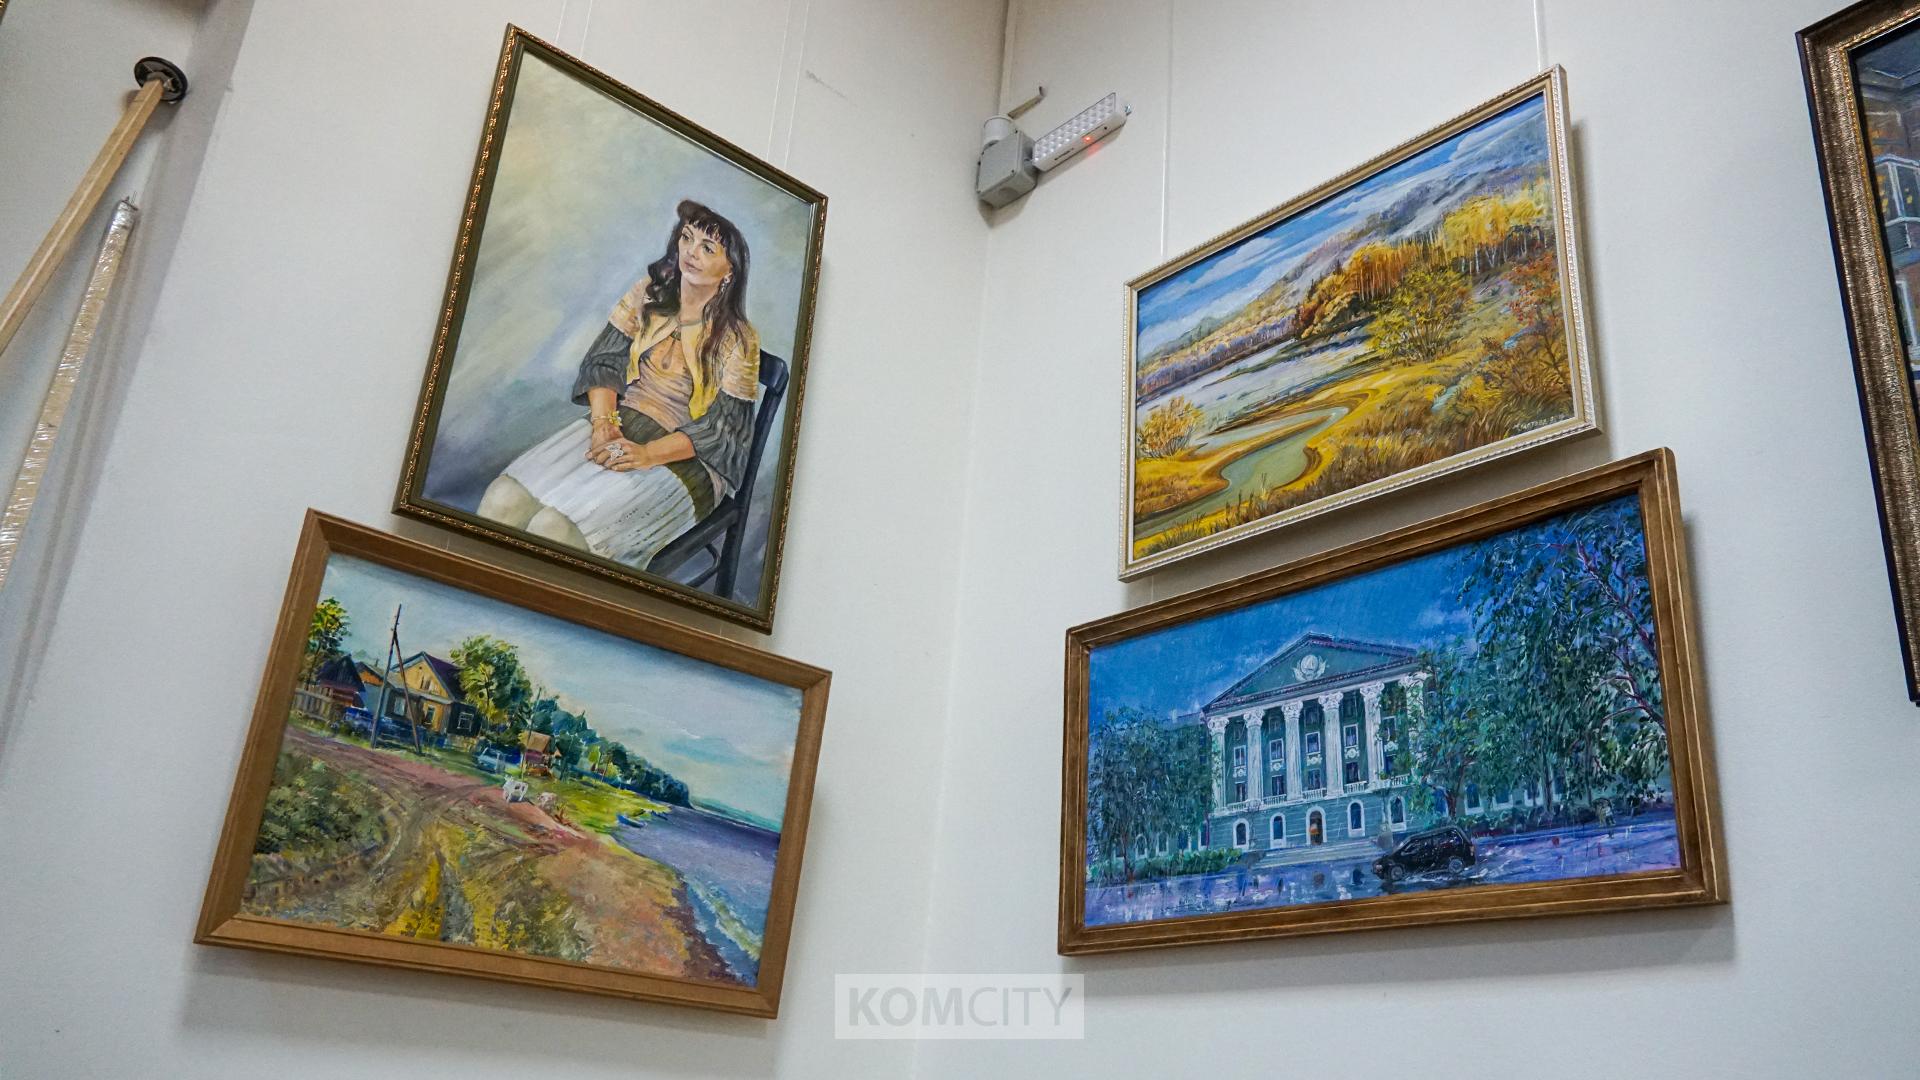 Городские пейзажи и натюрморты представлены на персональной выставке Татьяны Аистовой в Художественном музее